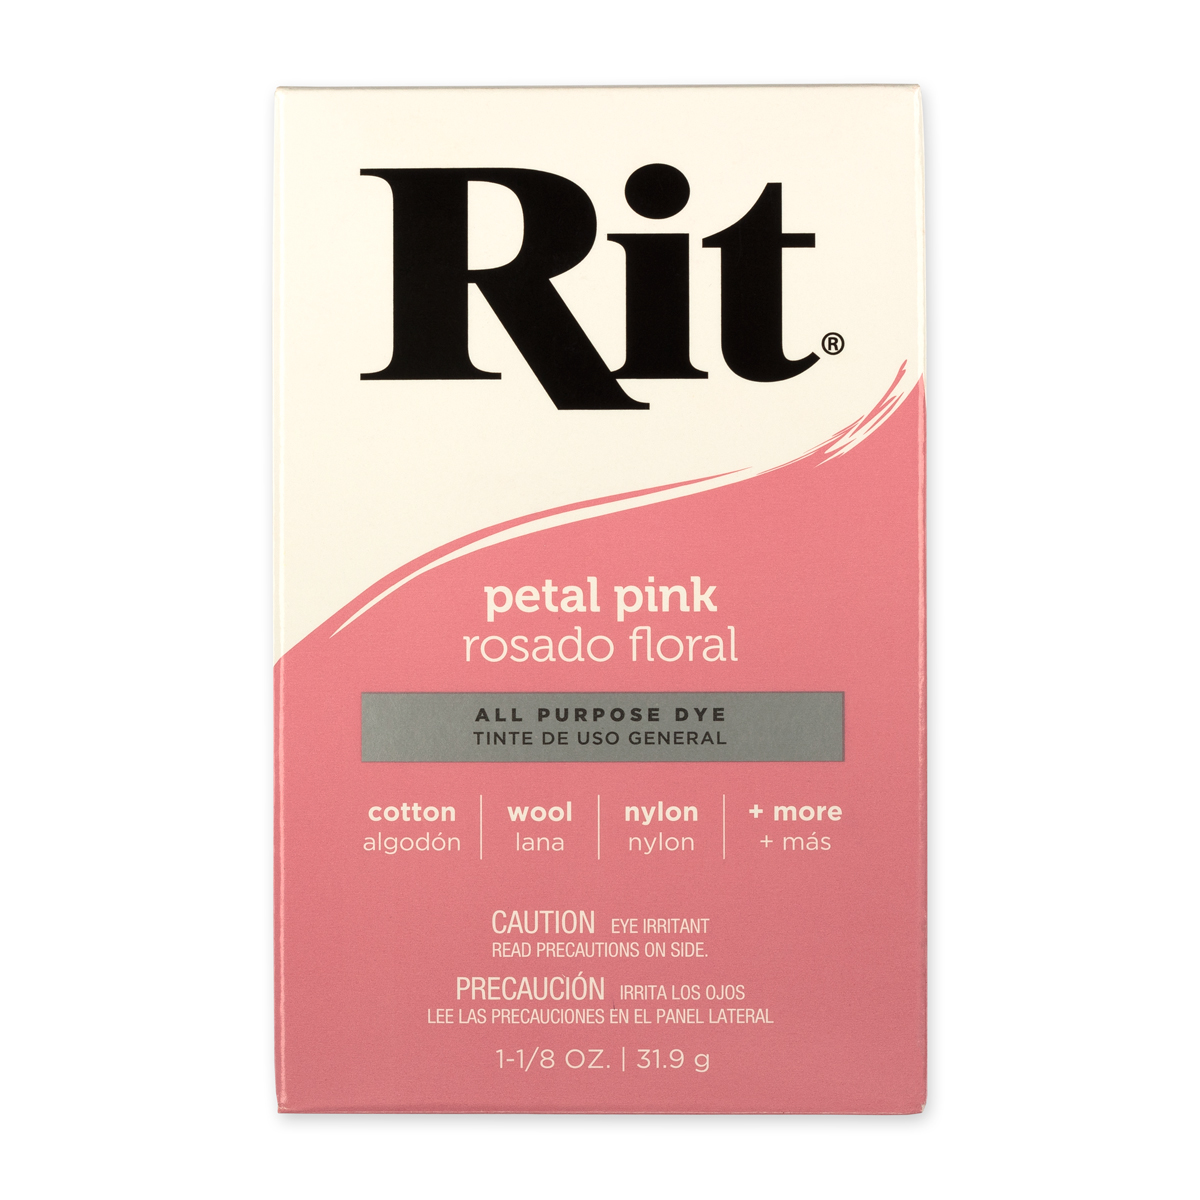 RIT краситель для ткани порошковый для окрашивания вручную и в стир. машине 31.9 г 10 Розовый/Petal Pink Фото 1.